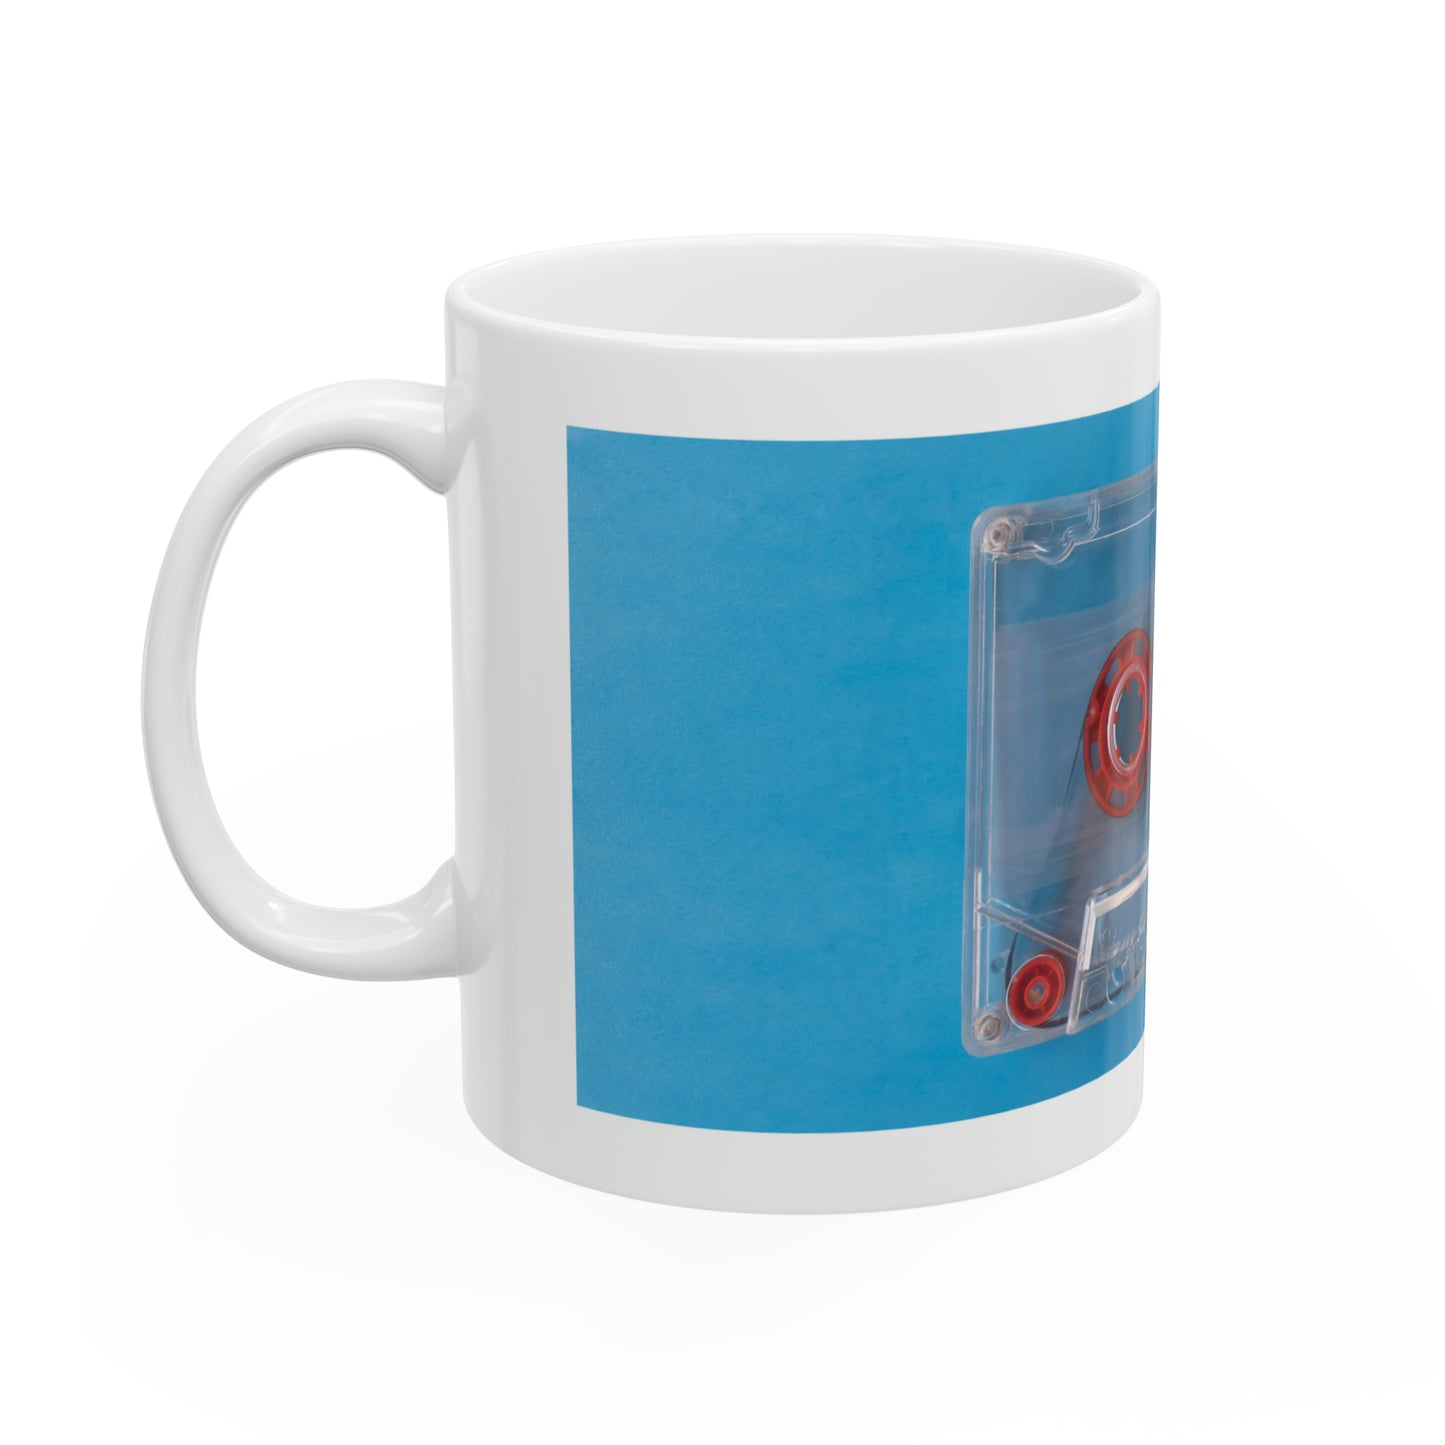 Retro Blue - Ceramic Mug 11oz